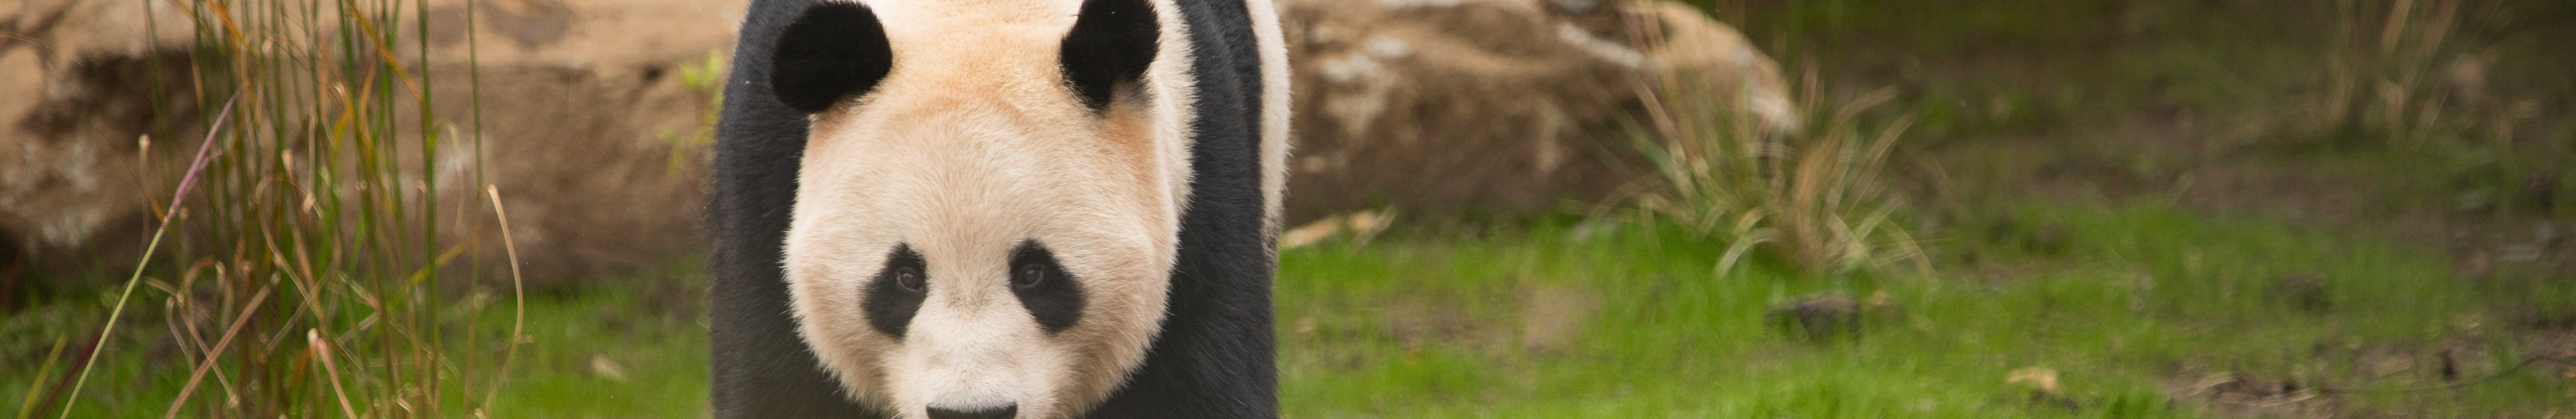 A panda walking through their habitat